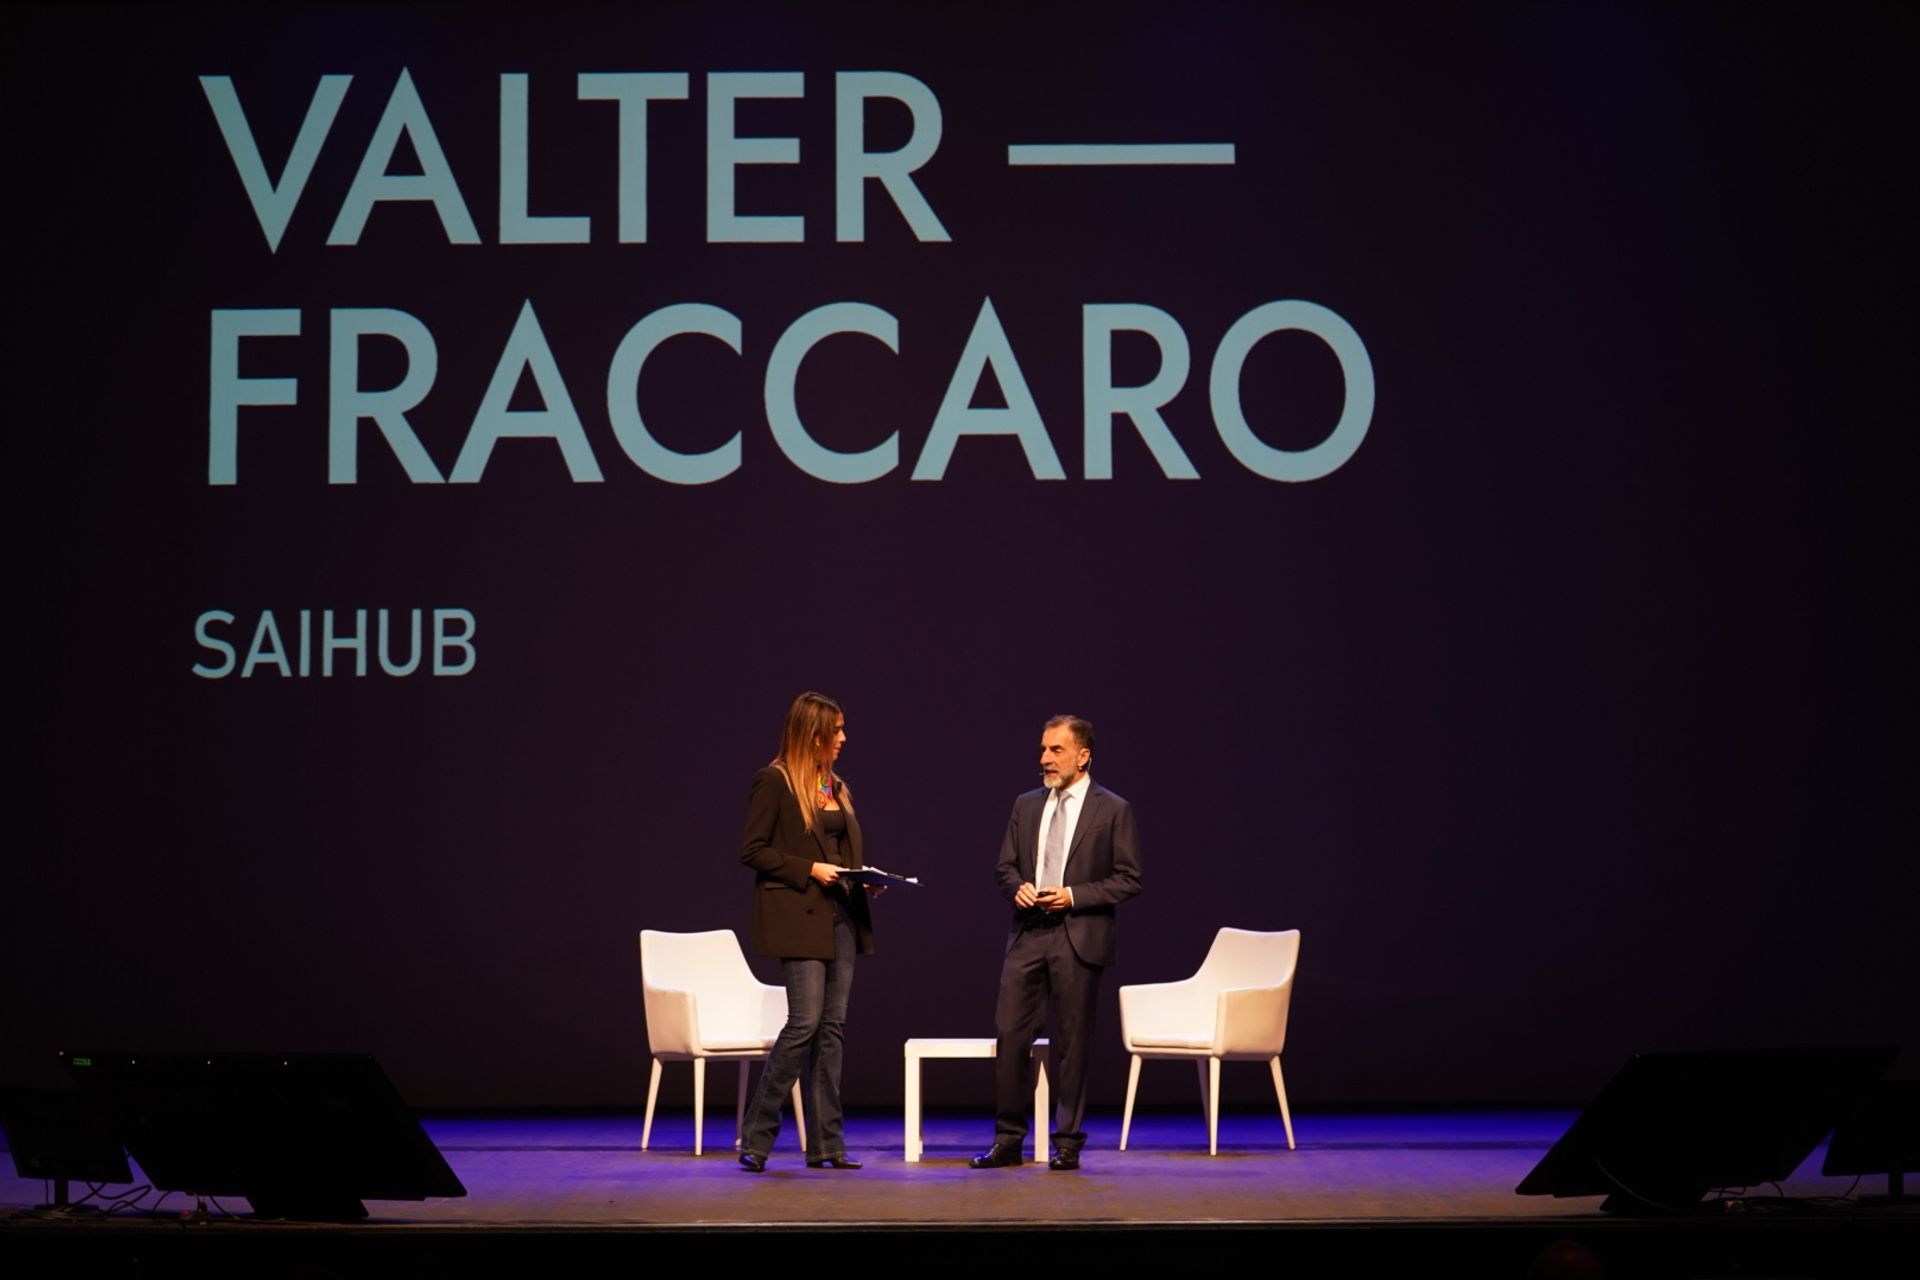 Valter Fraccaro adalah Presiden SAIHub, singkatan dari Siena Artificial Intelligence Hub, pusat kepentingan global di bidang Ilmu Kehidupan